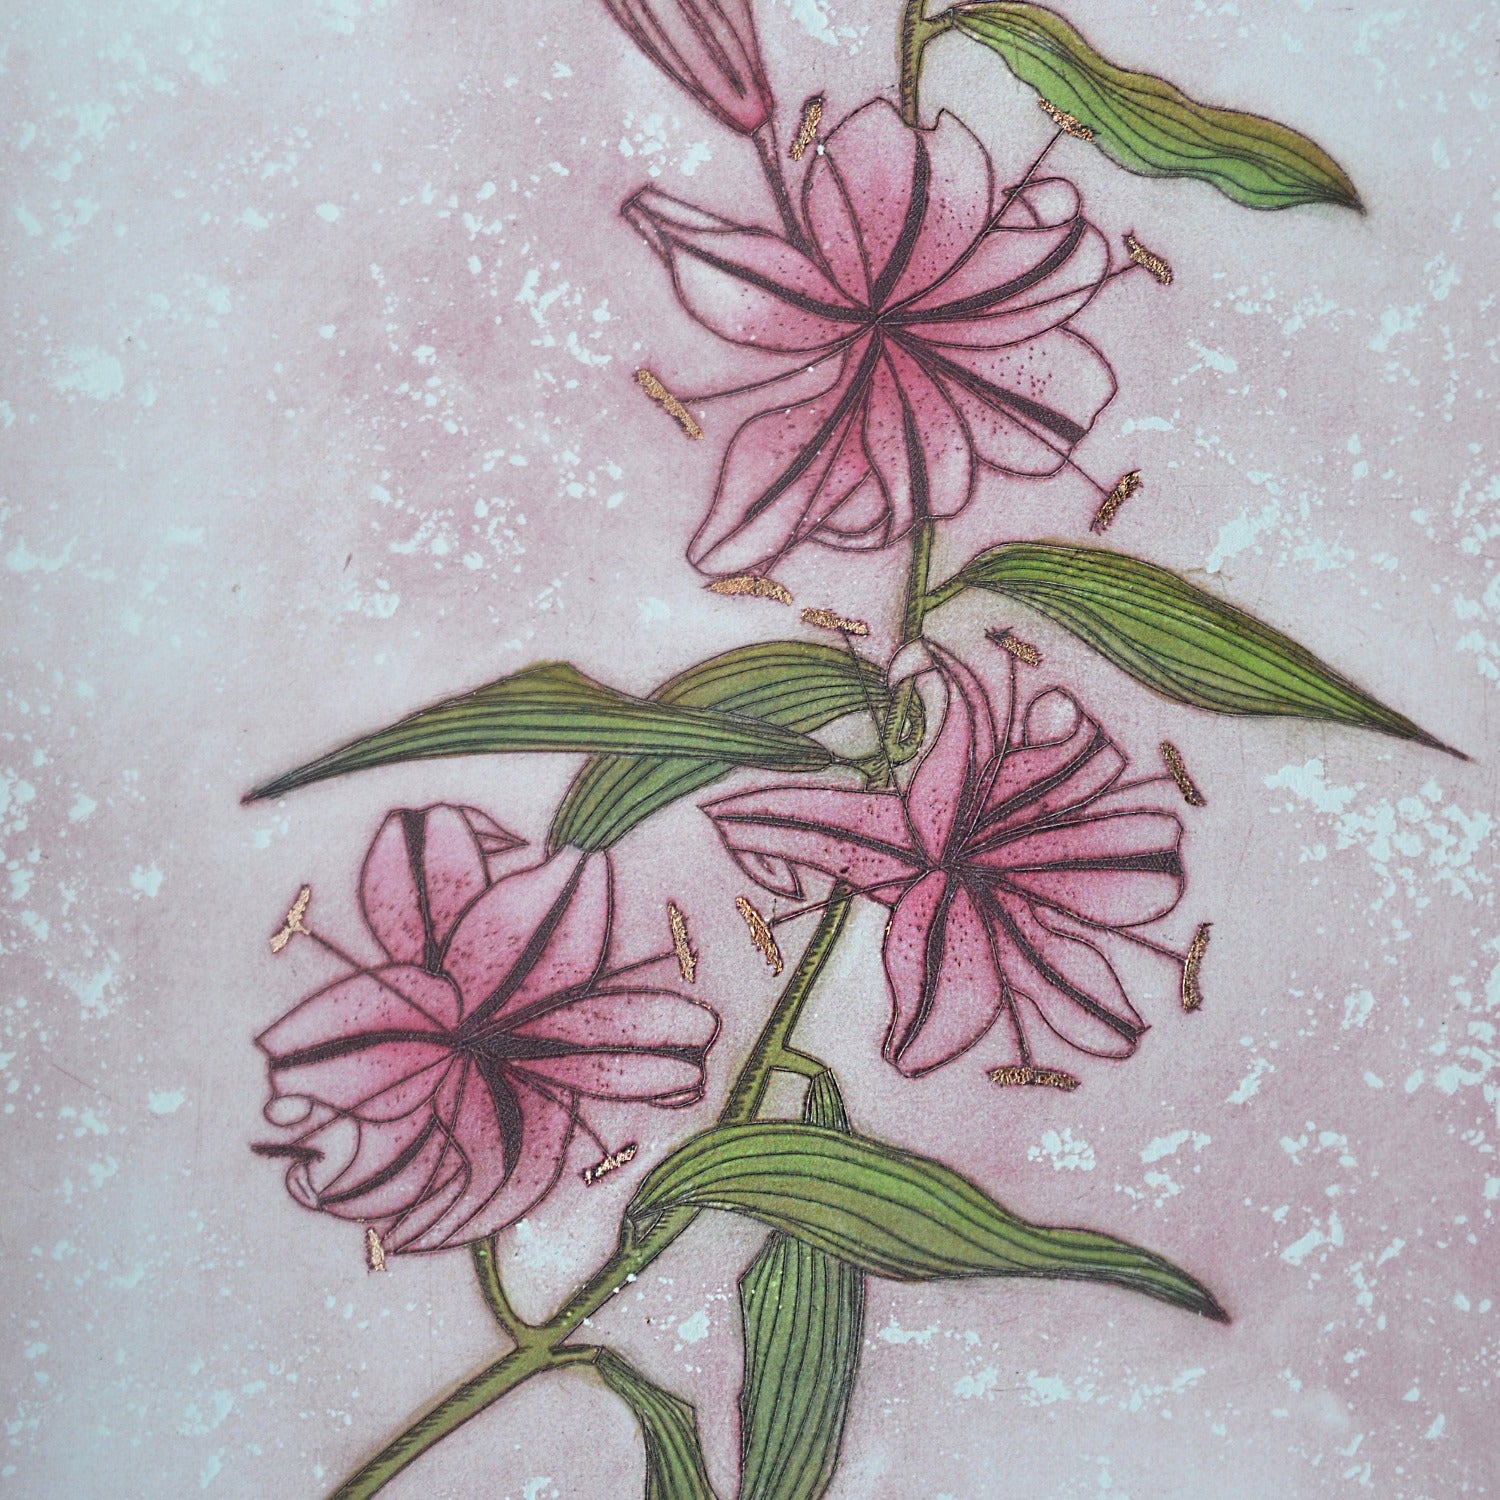 Five Lillies by jeannelise Edelsten